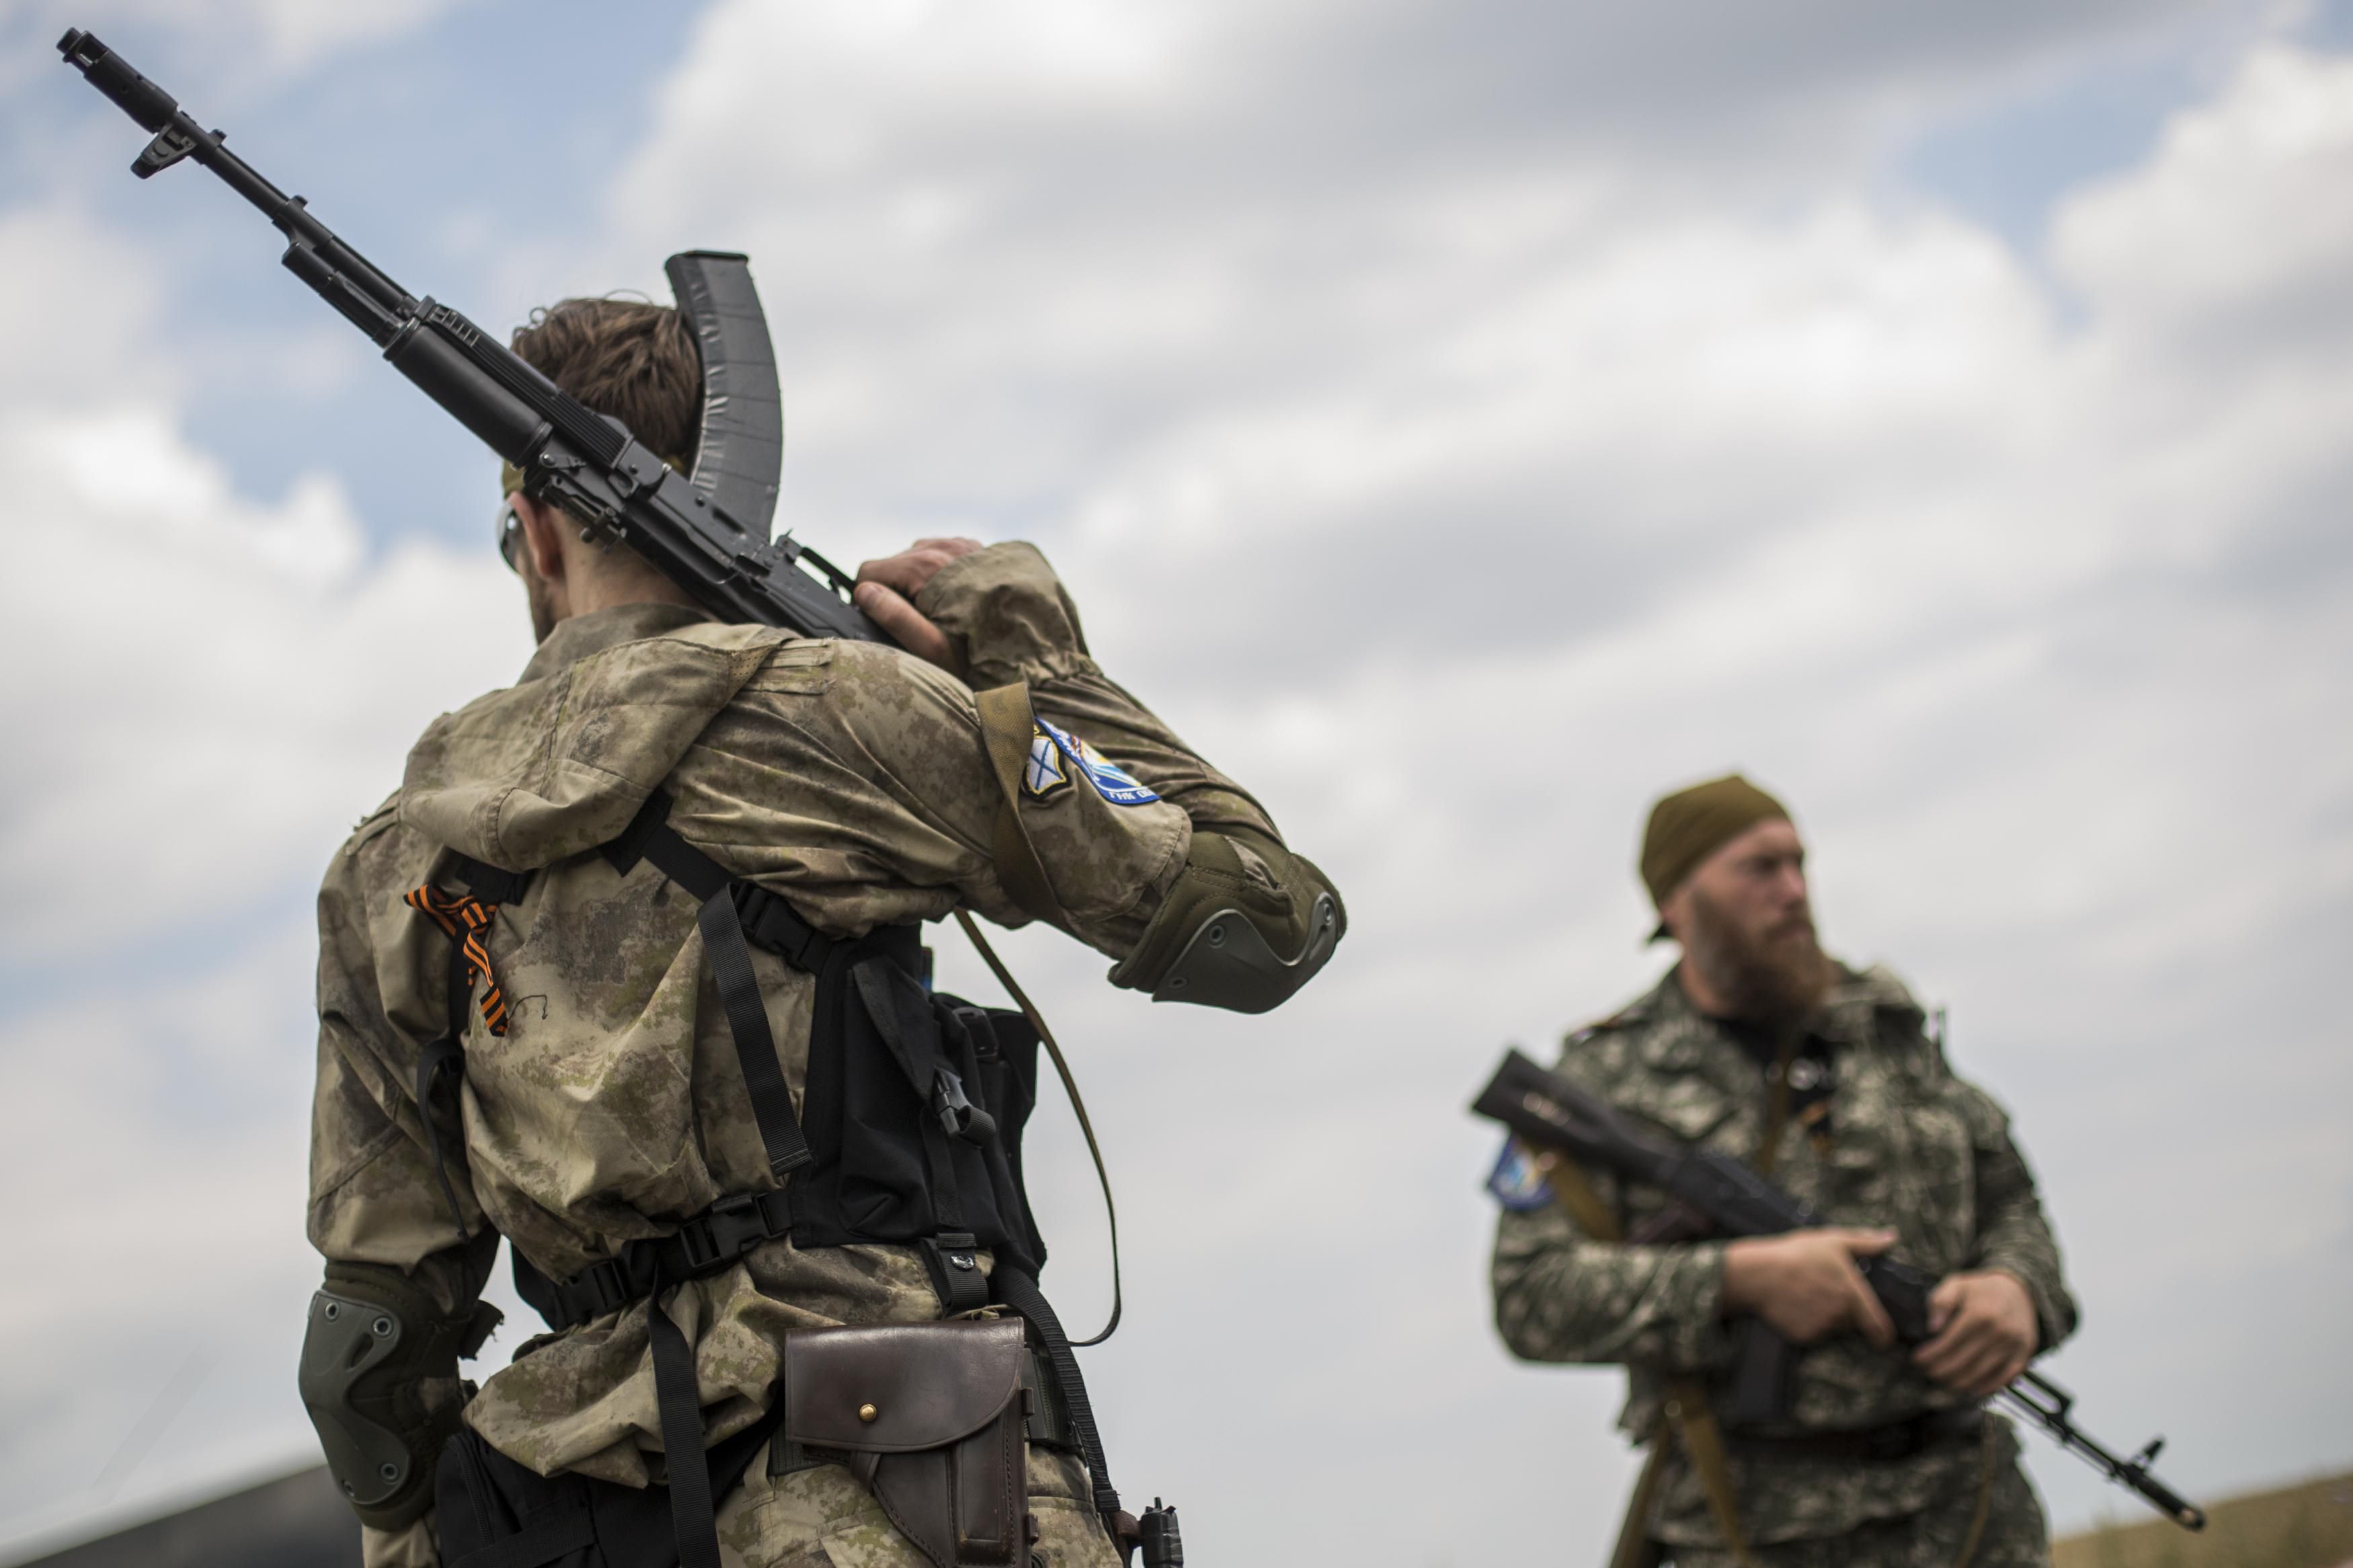 Доба на Донбасі: бойовики гатять з гранатометів та кулеметів, є поранені